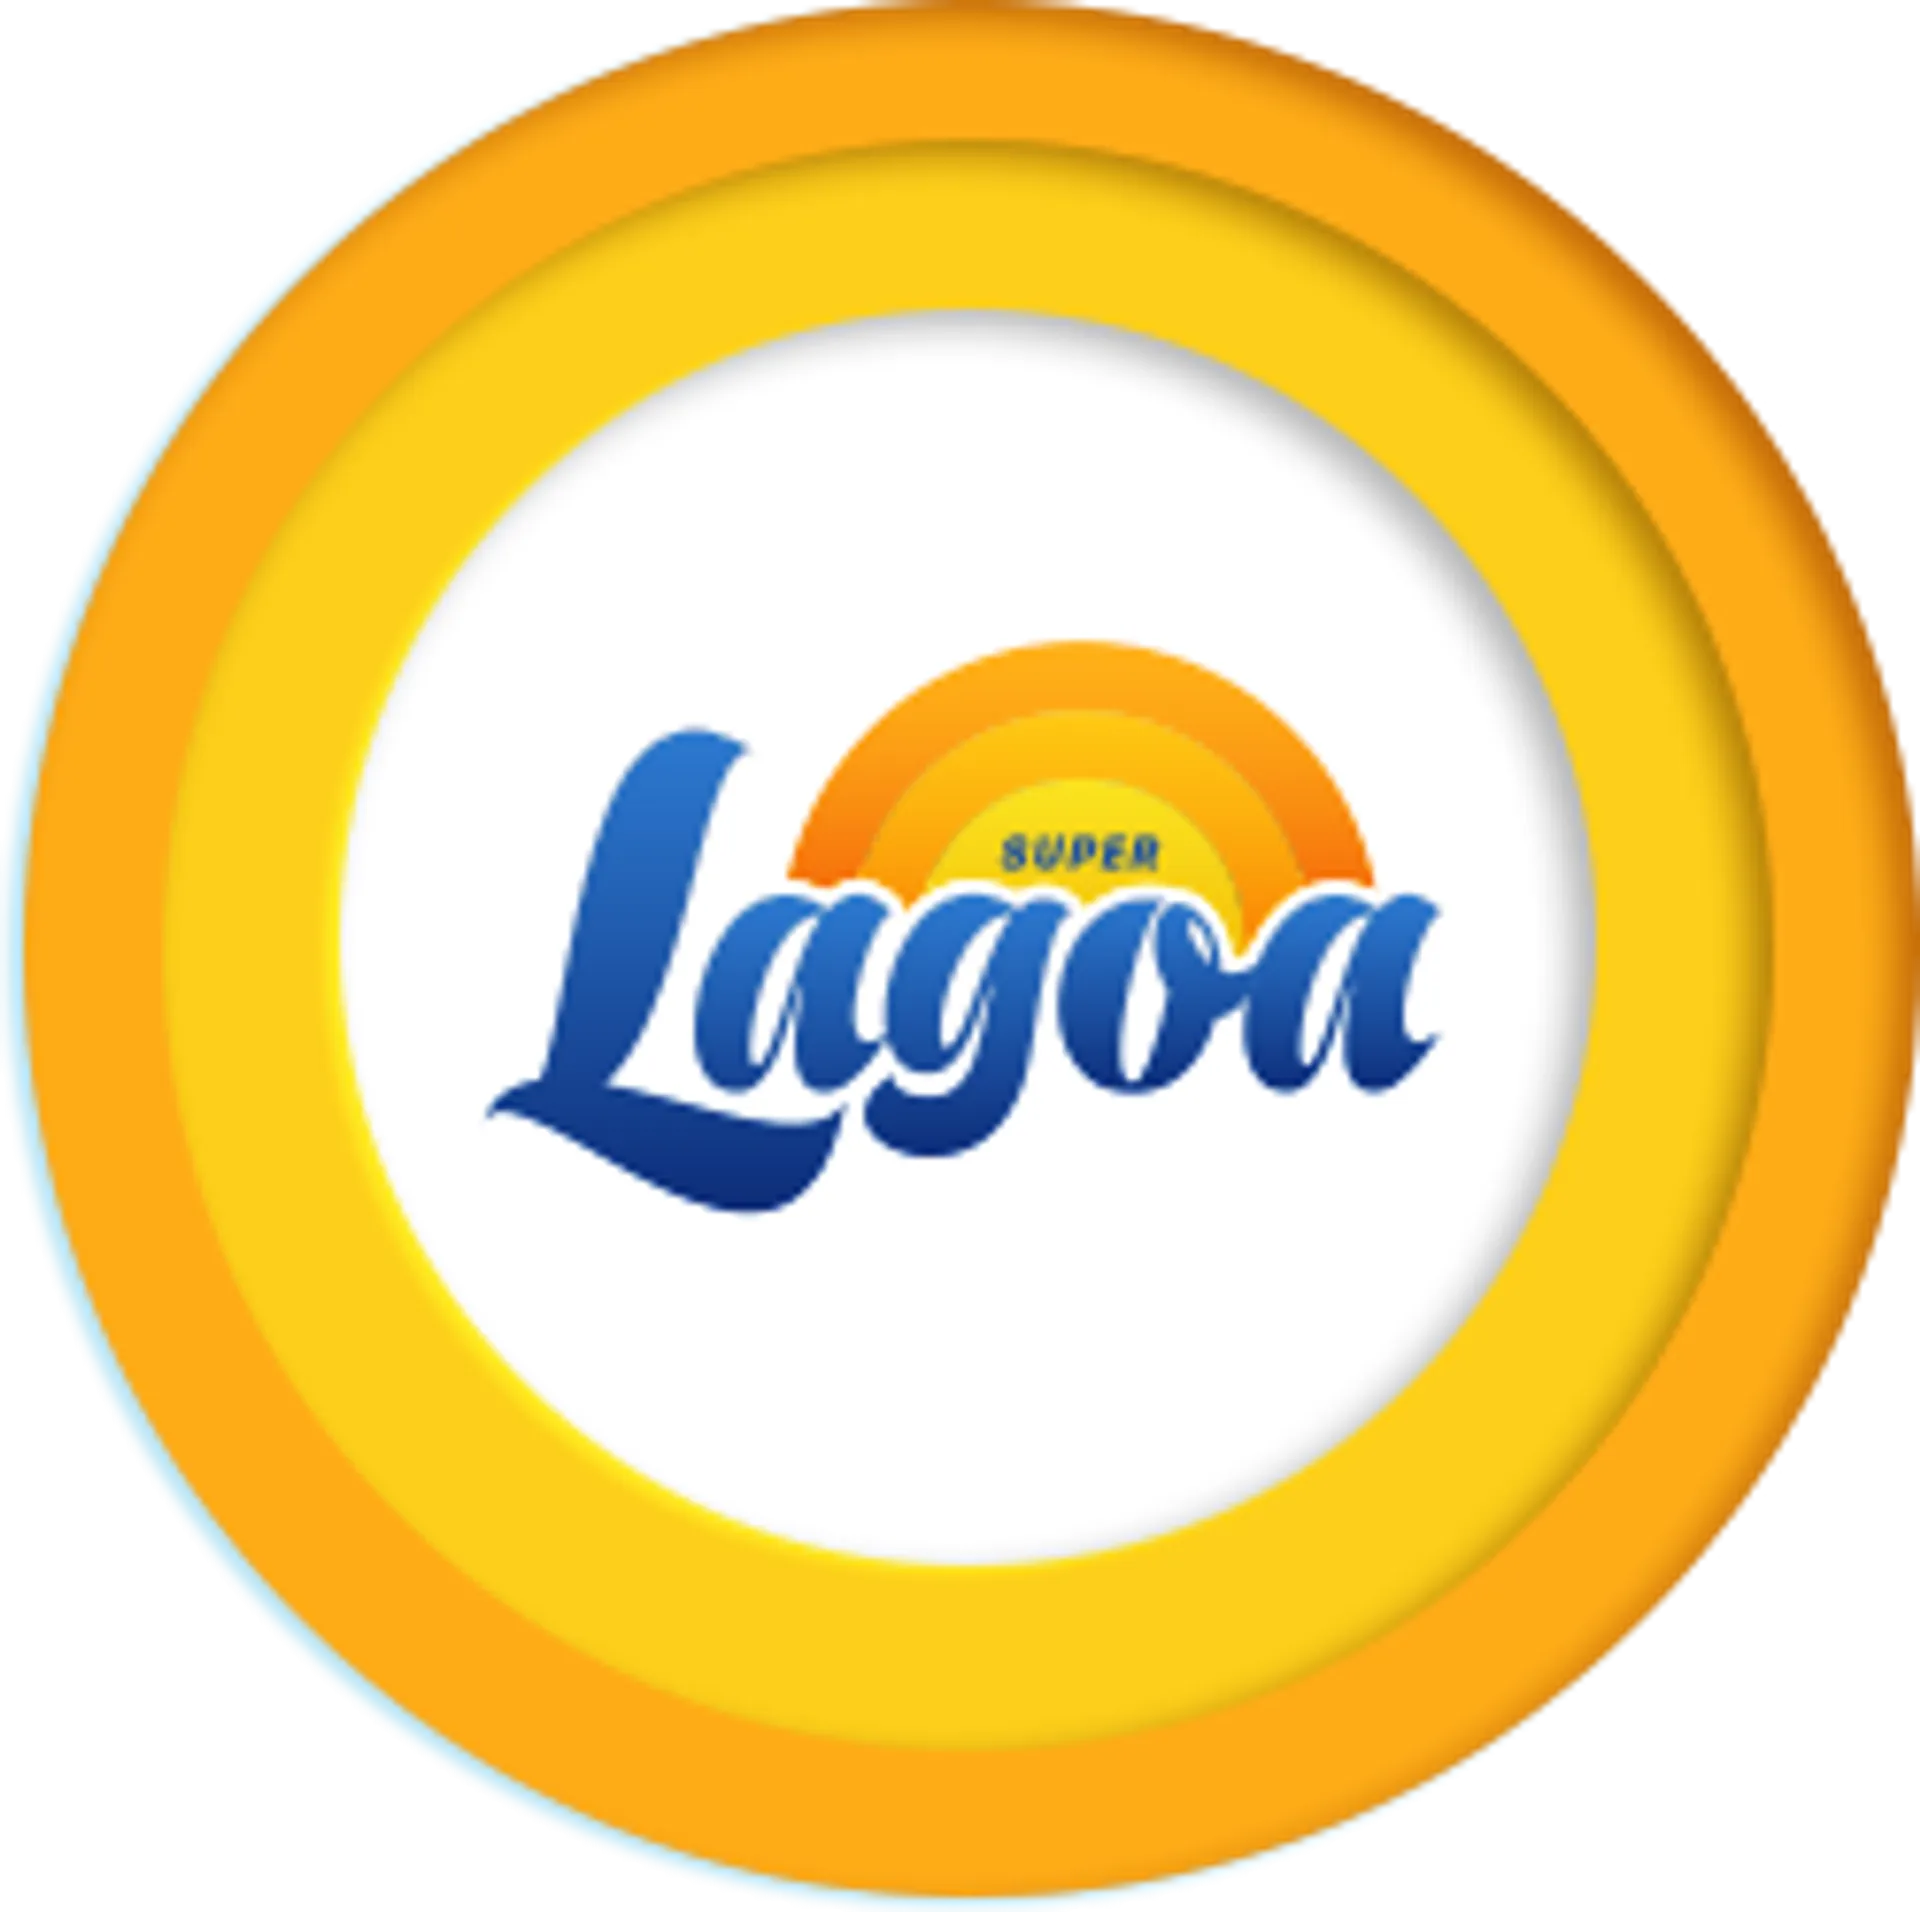 SUPER LAGOA logo